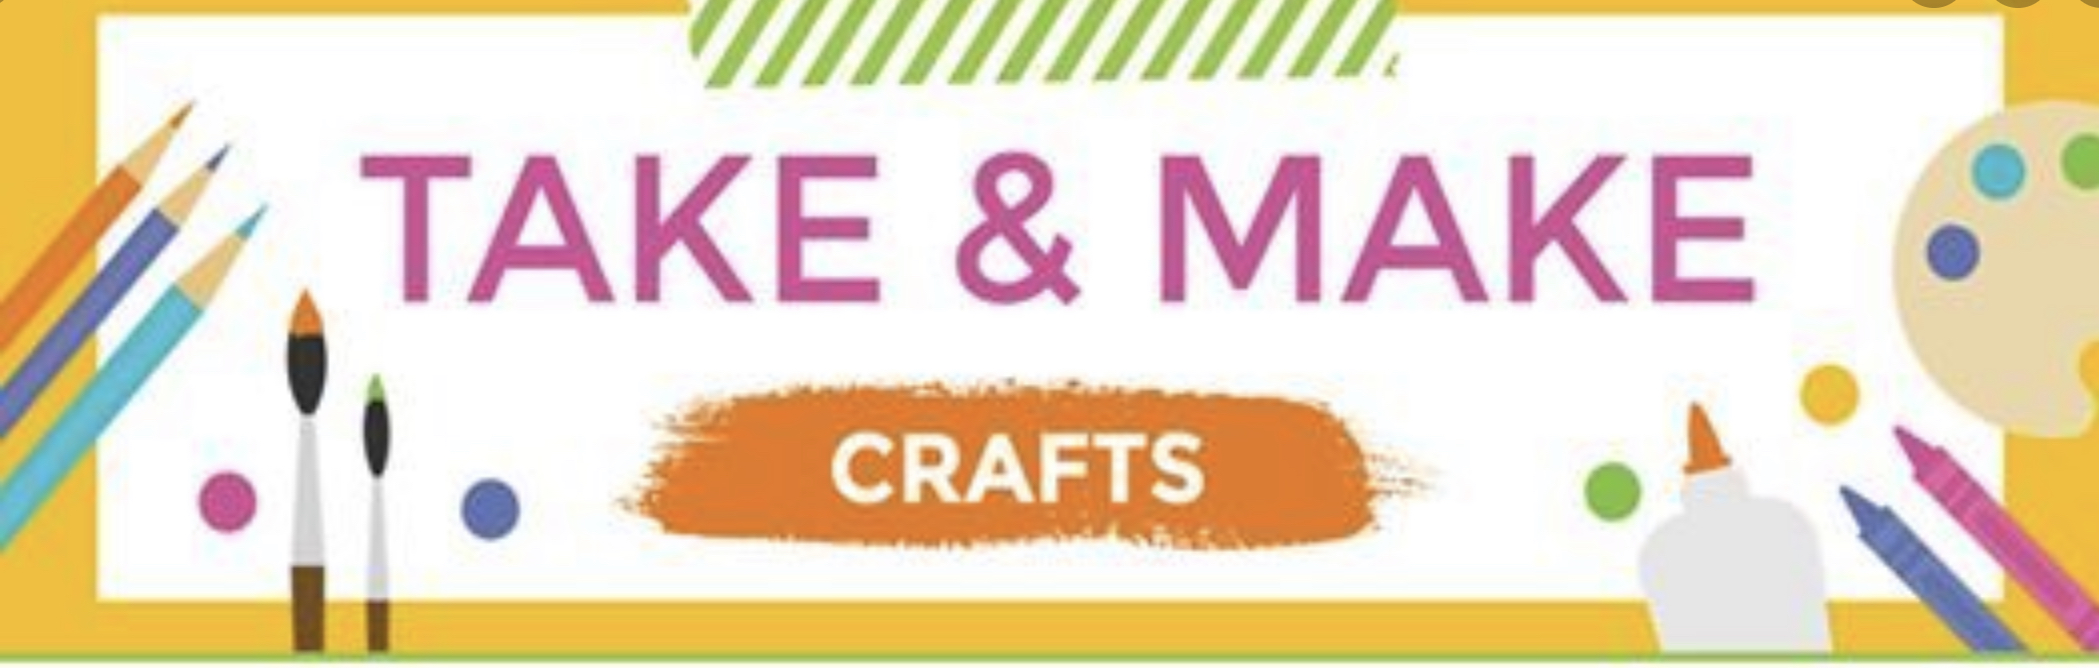 Take & Make craft sign